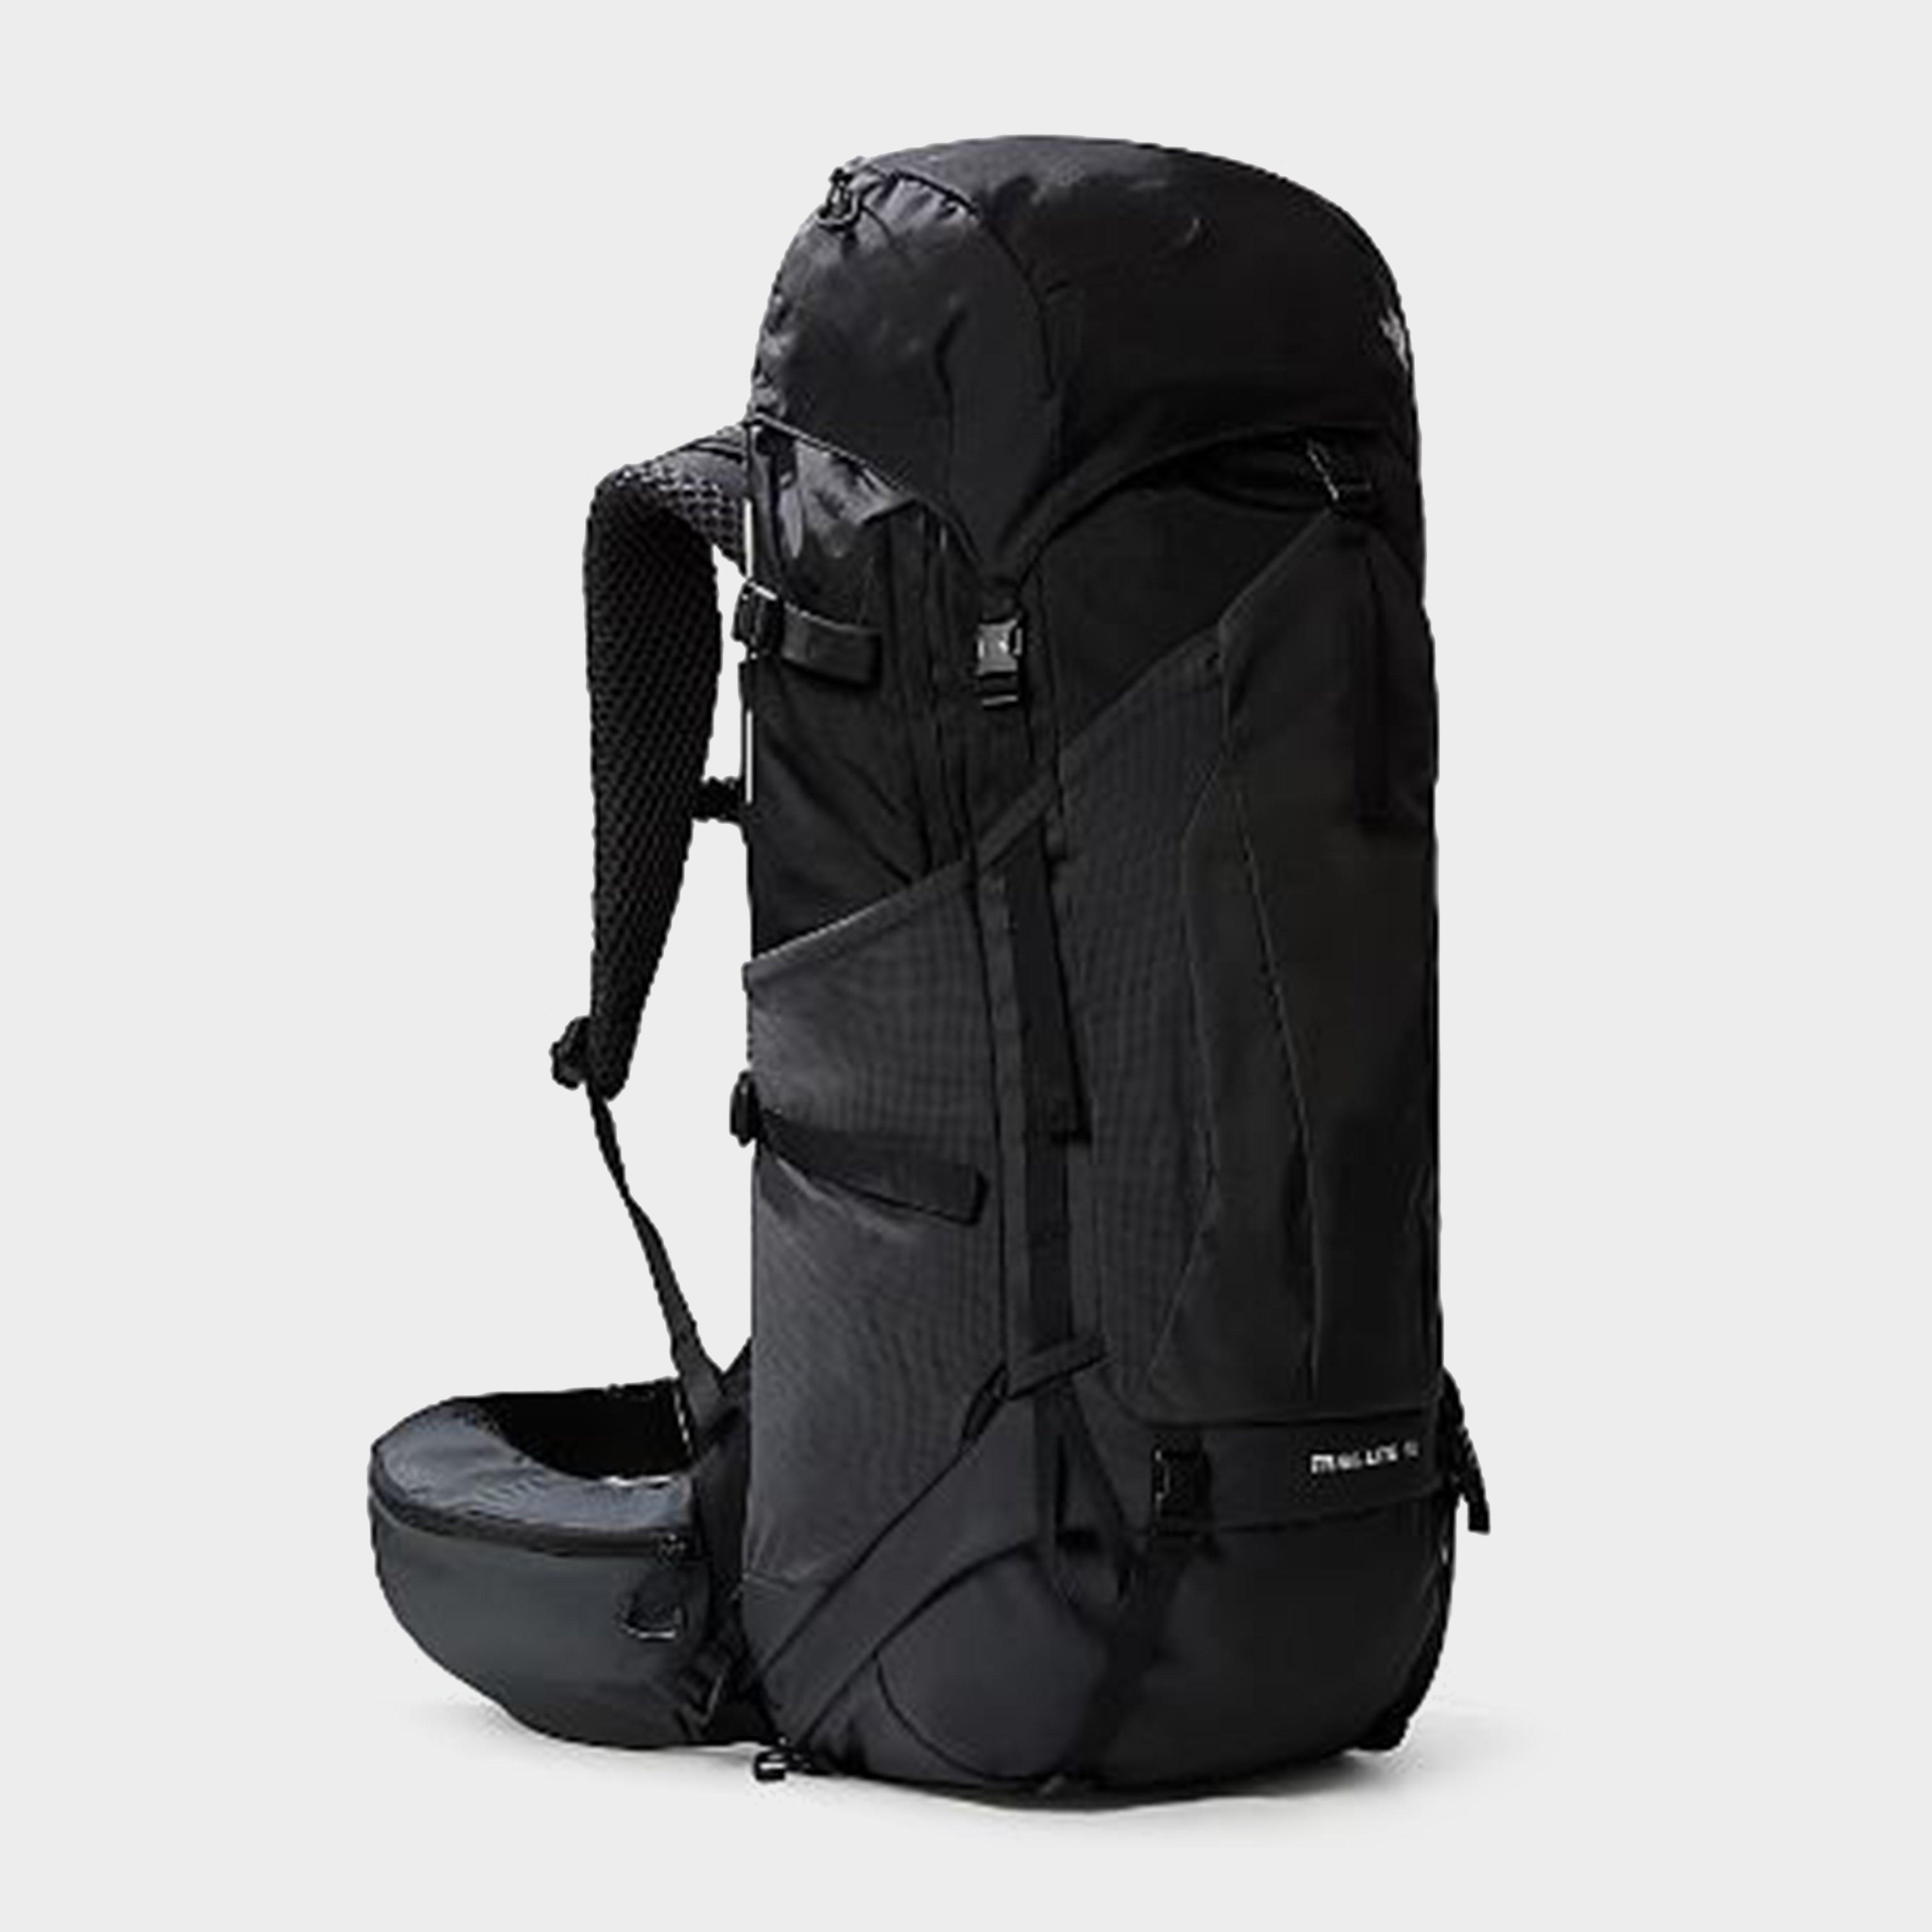 Trail Lite 24 Litre Backpack - Black, Black